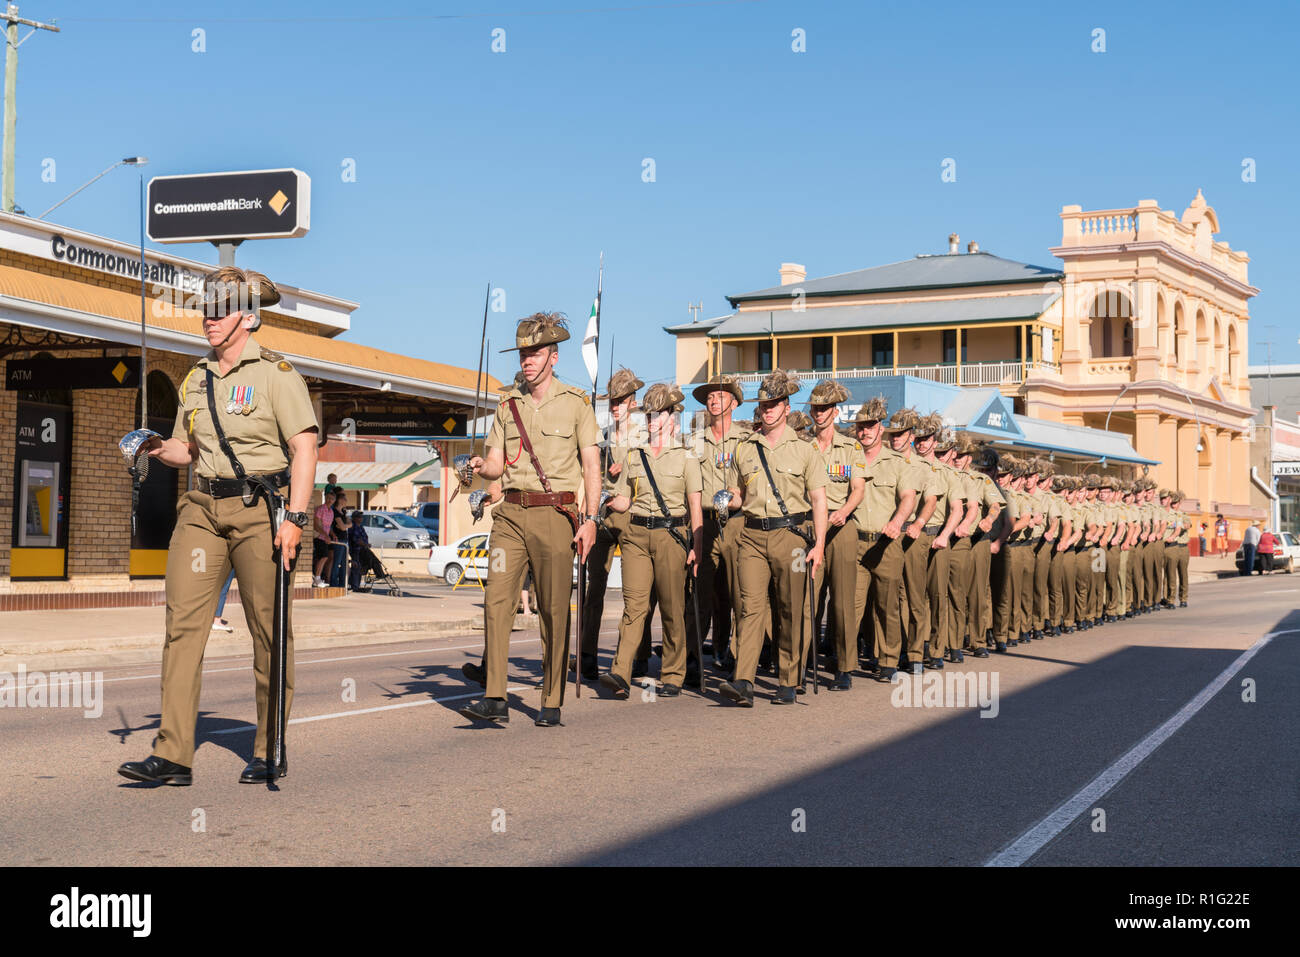 Des soldats défilent le jour d'Anzac à Charters Towers, Queensland, Australie Banque D'Images